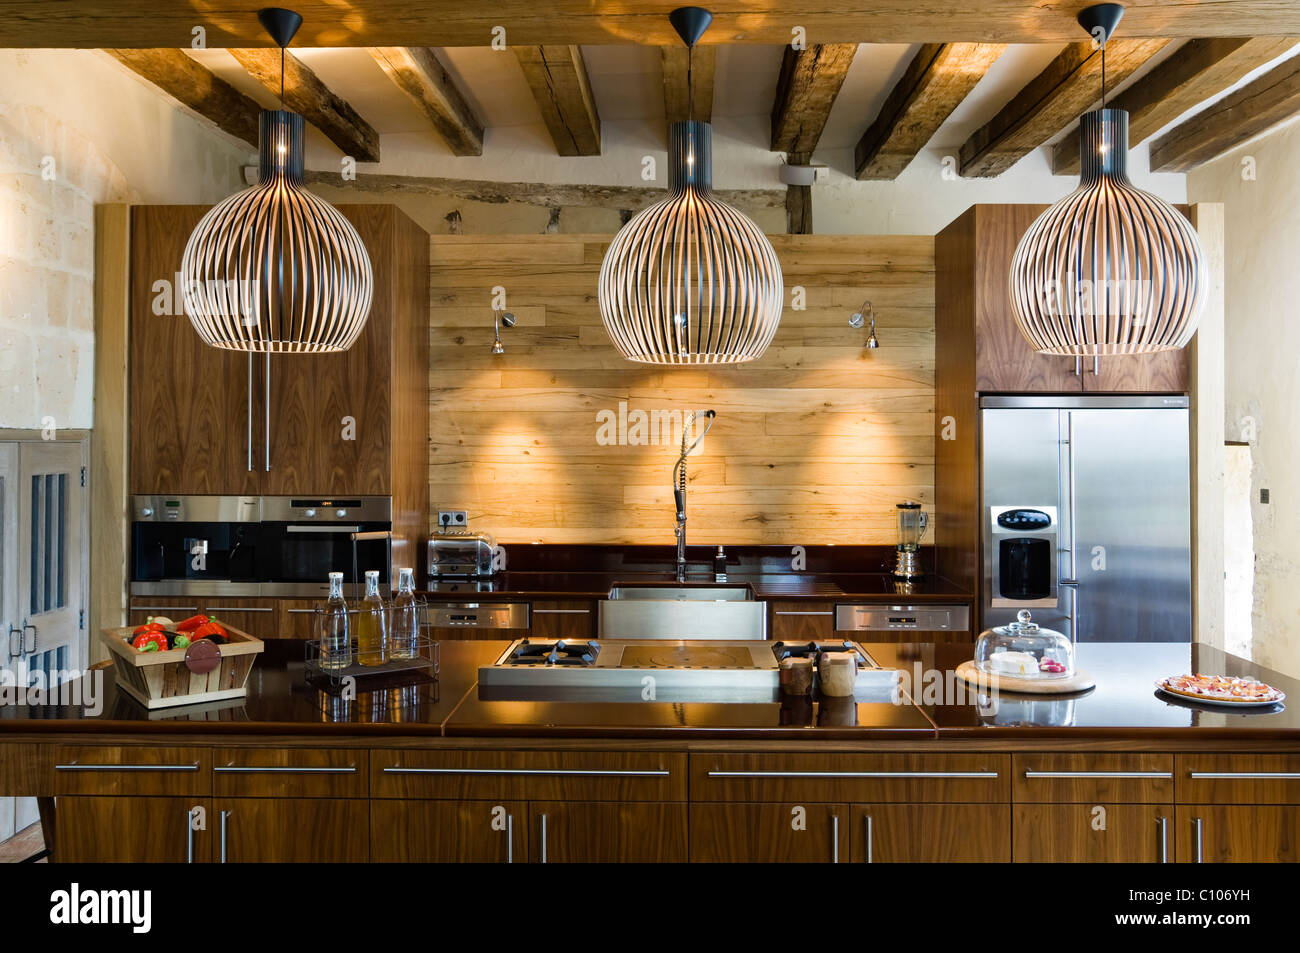 Secto Lampen in der Küche mit Balkendecke und Asselin Birke Arbeitsplatte  Stockfotografie - Alamy